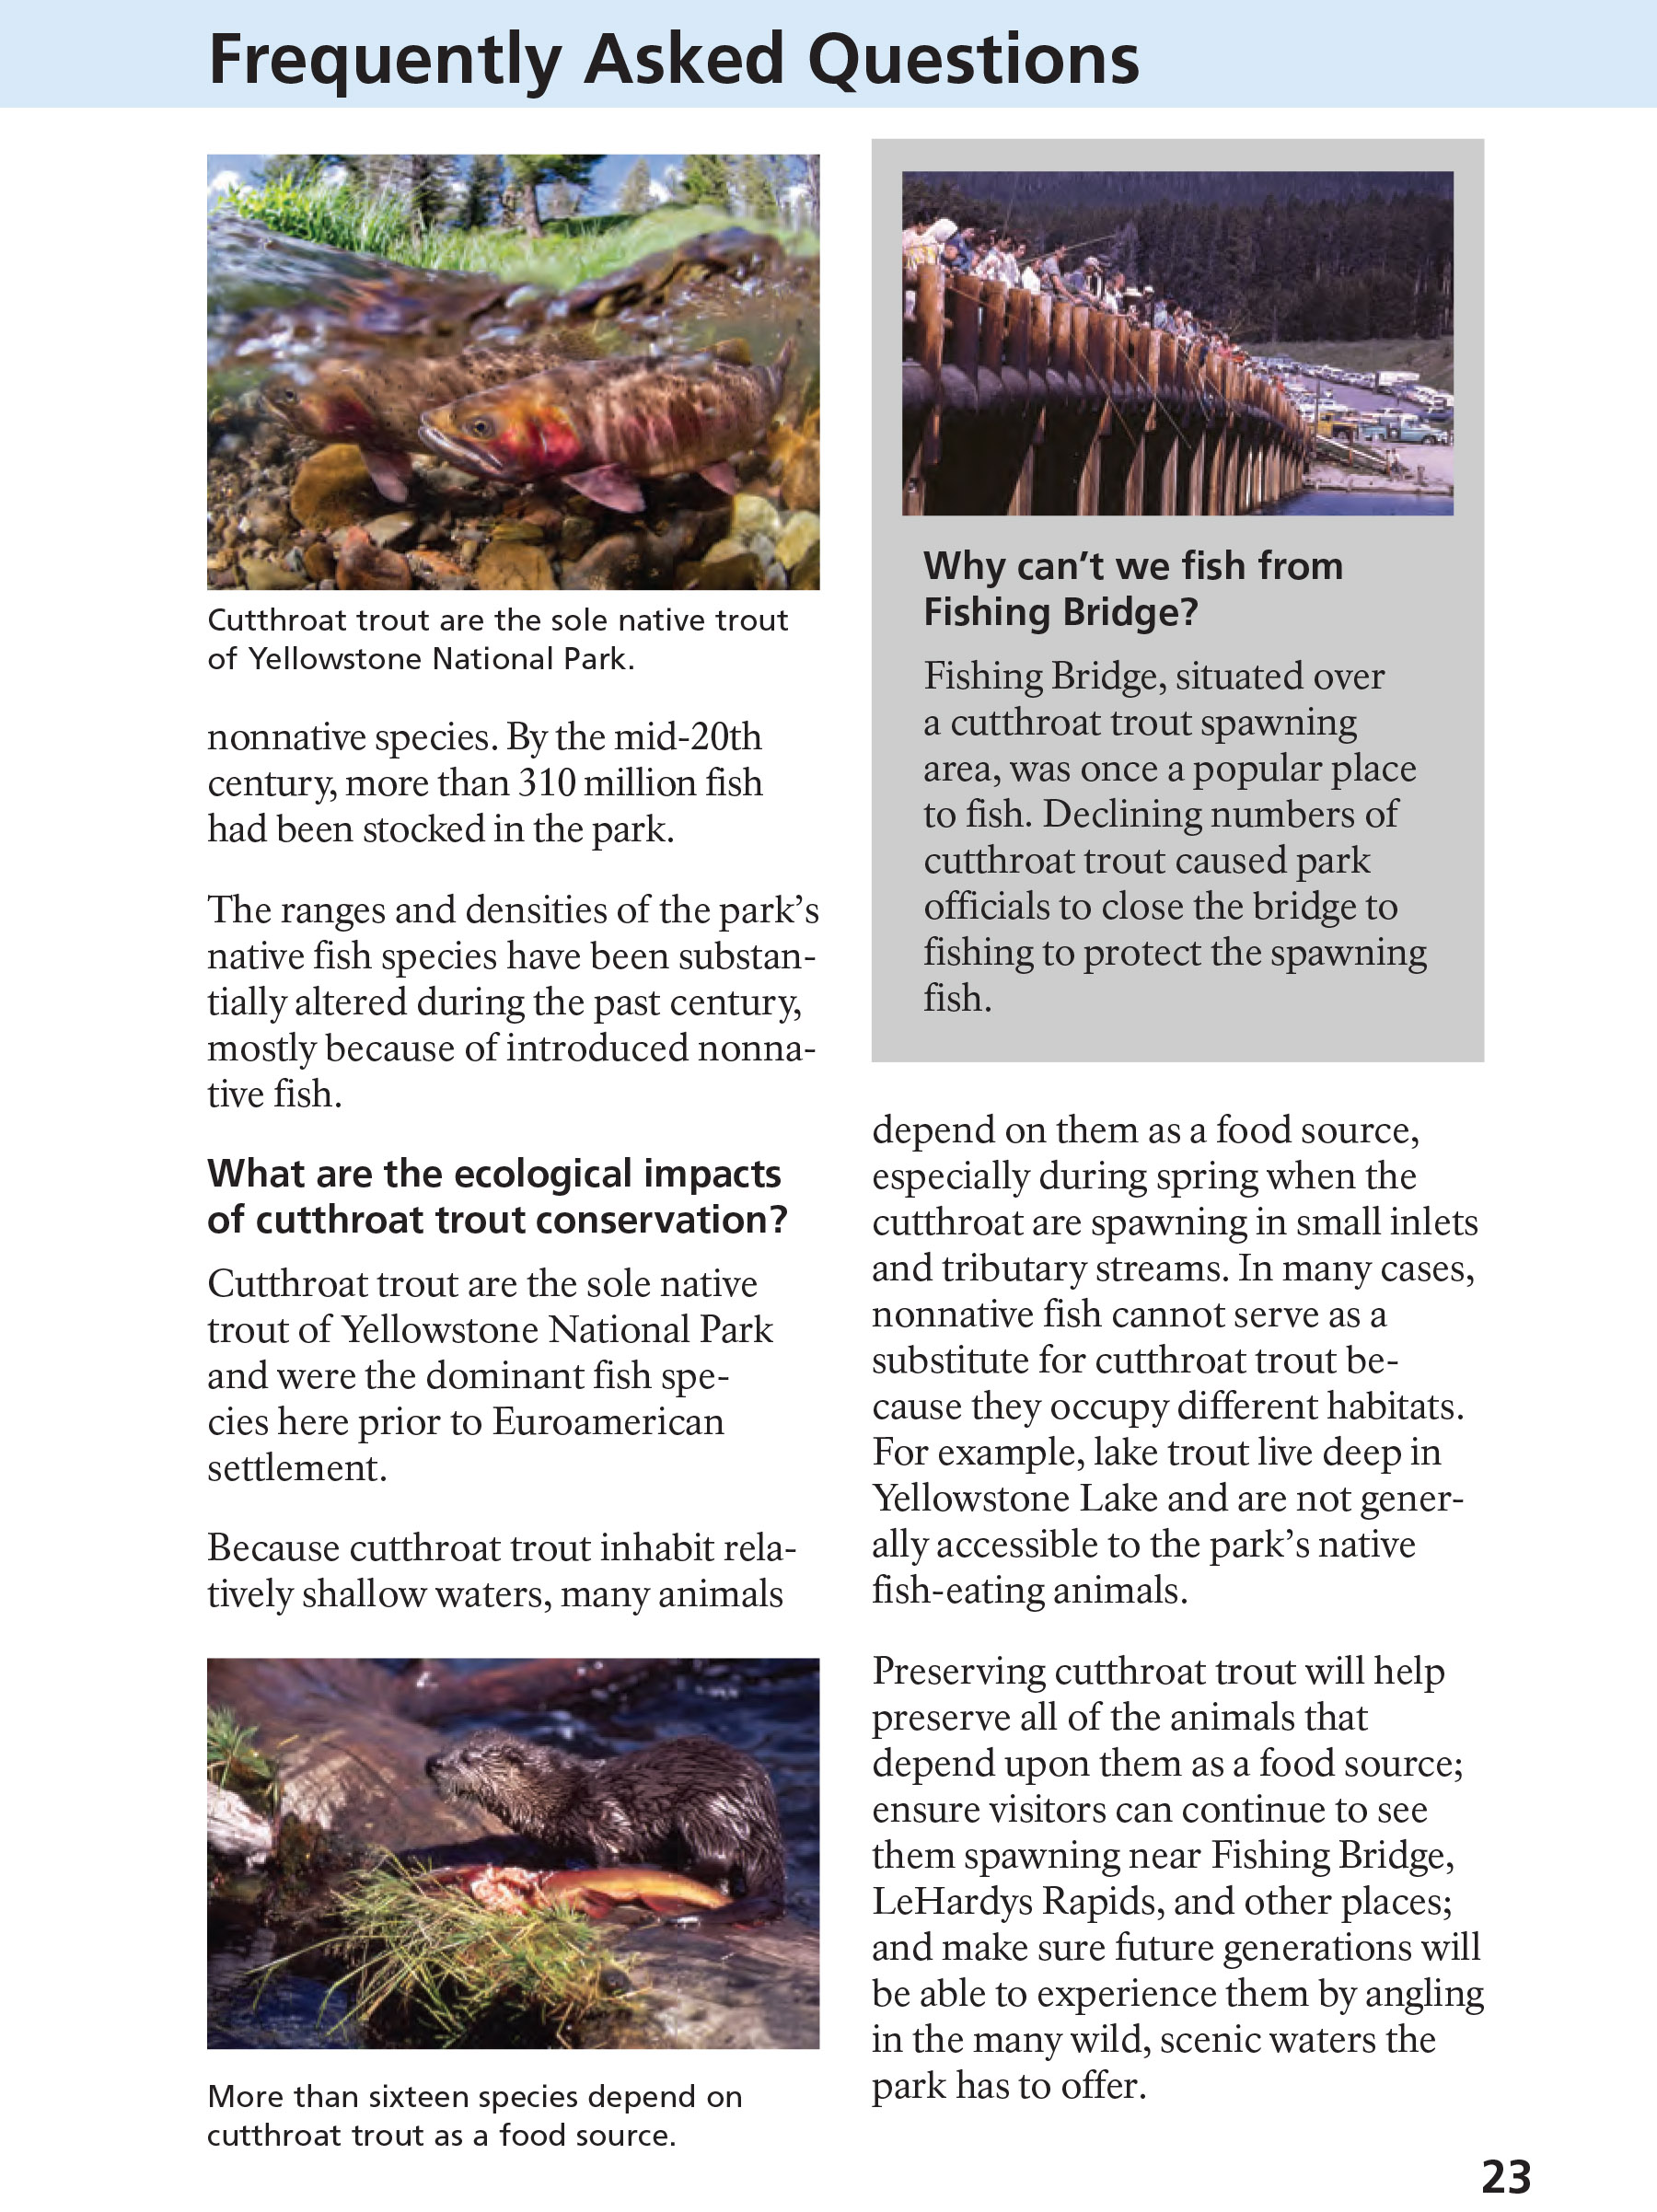 Yellowstone Fishing Regulations Page 23 - NPS Image